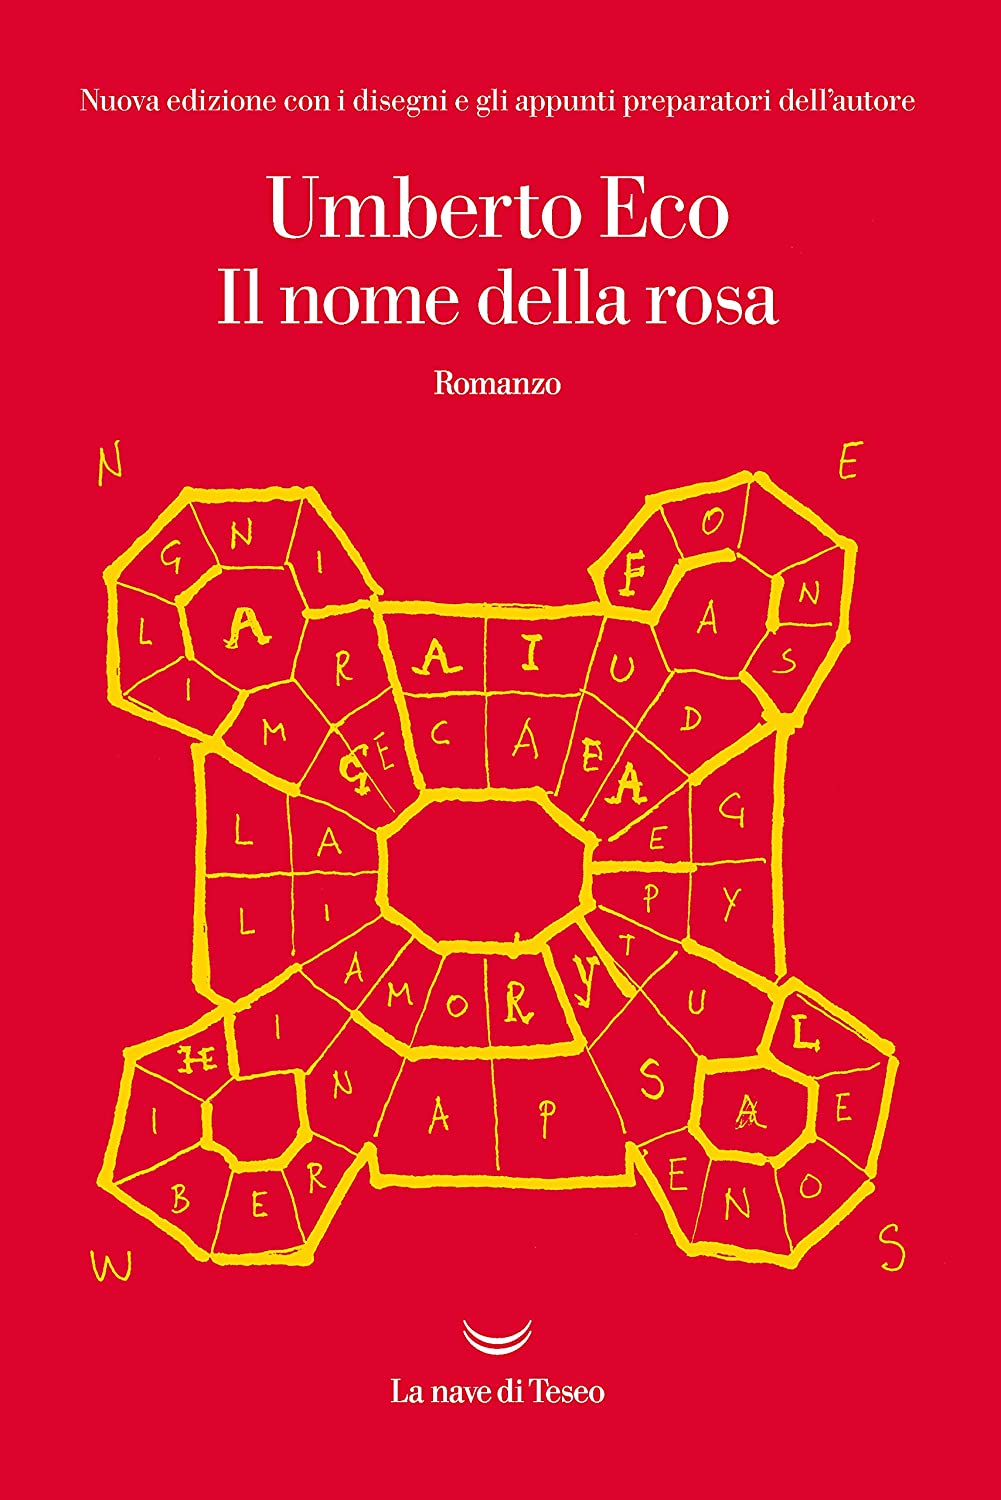 Umberto Eco: Il nome della rosa (Italian language, 2006, Bompiani)